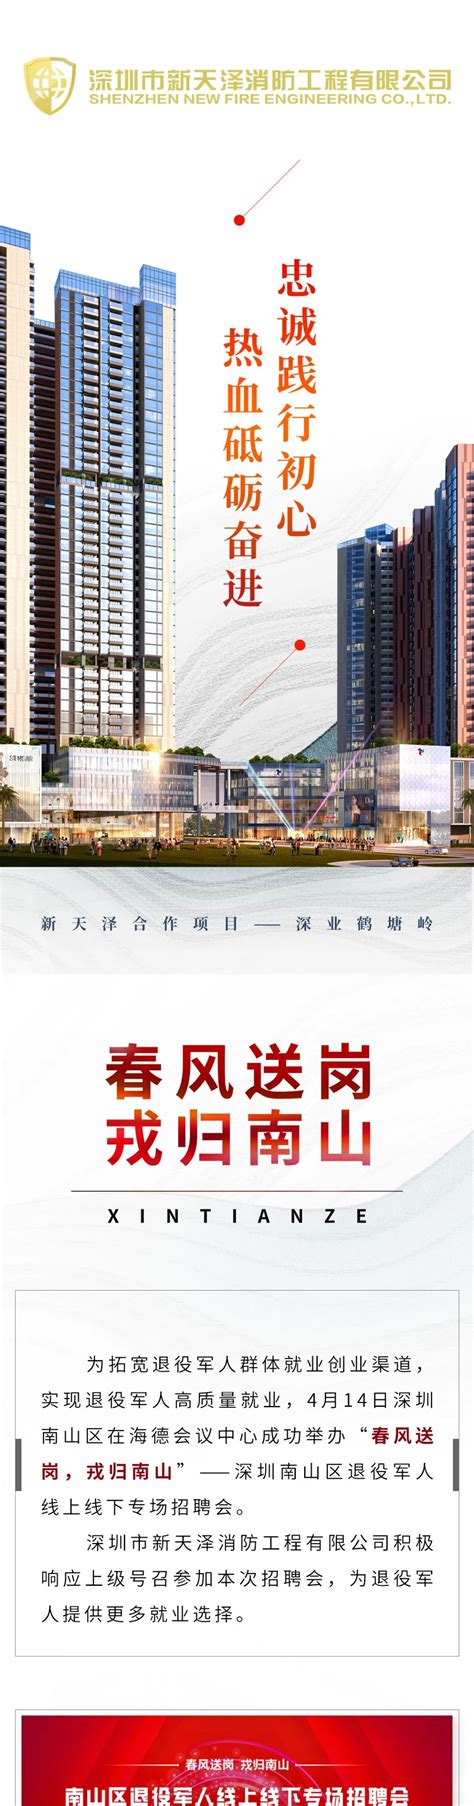 寿光高新区投资集团招聘简章-潍坊天泽人力资源管理有限公司